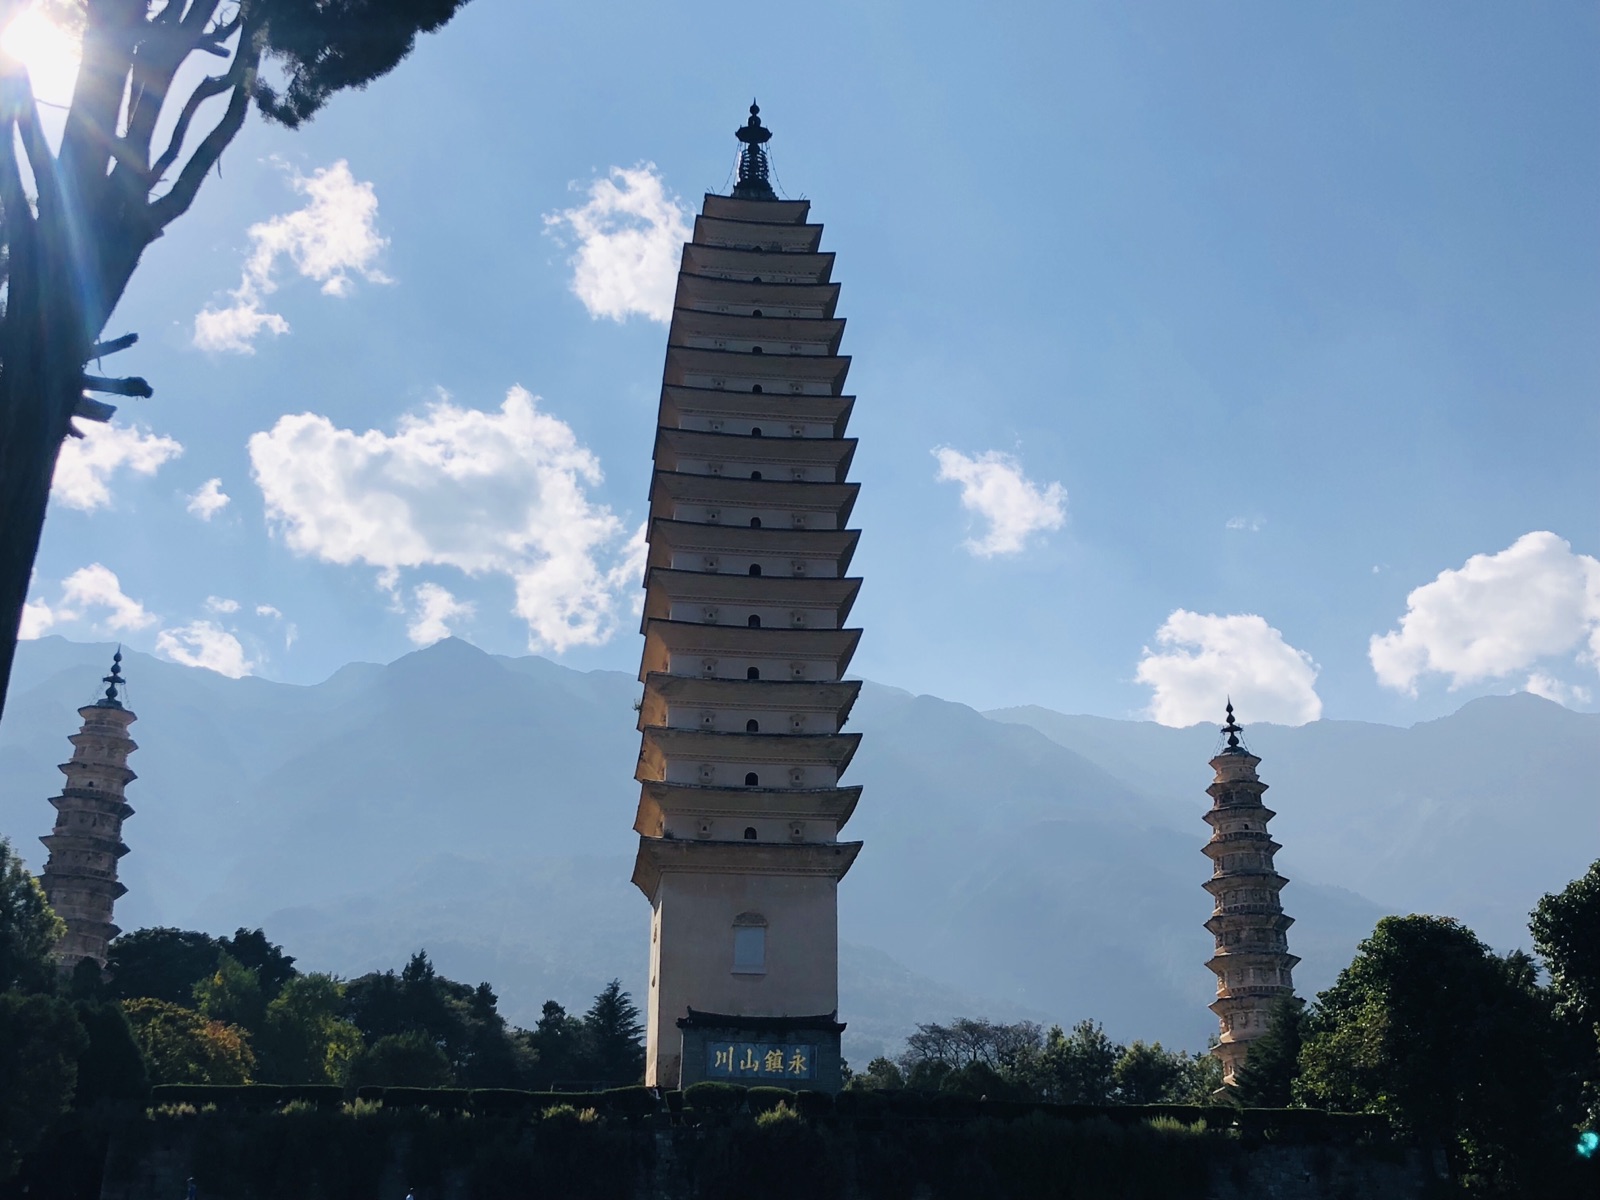 圣寺三塔位于大理古城西北部1.5公里处，西对苍山应乐峰，东对洱海。来这